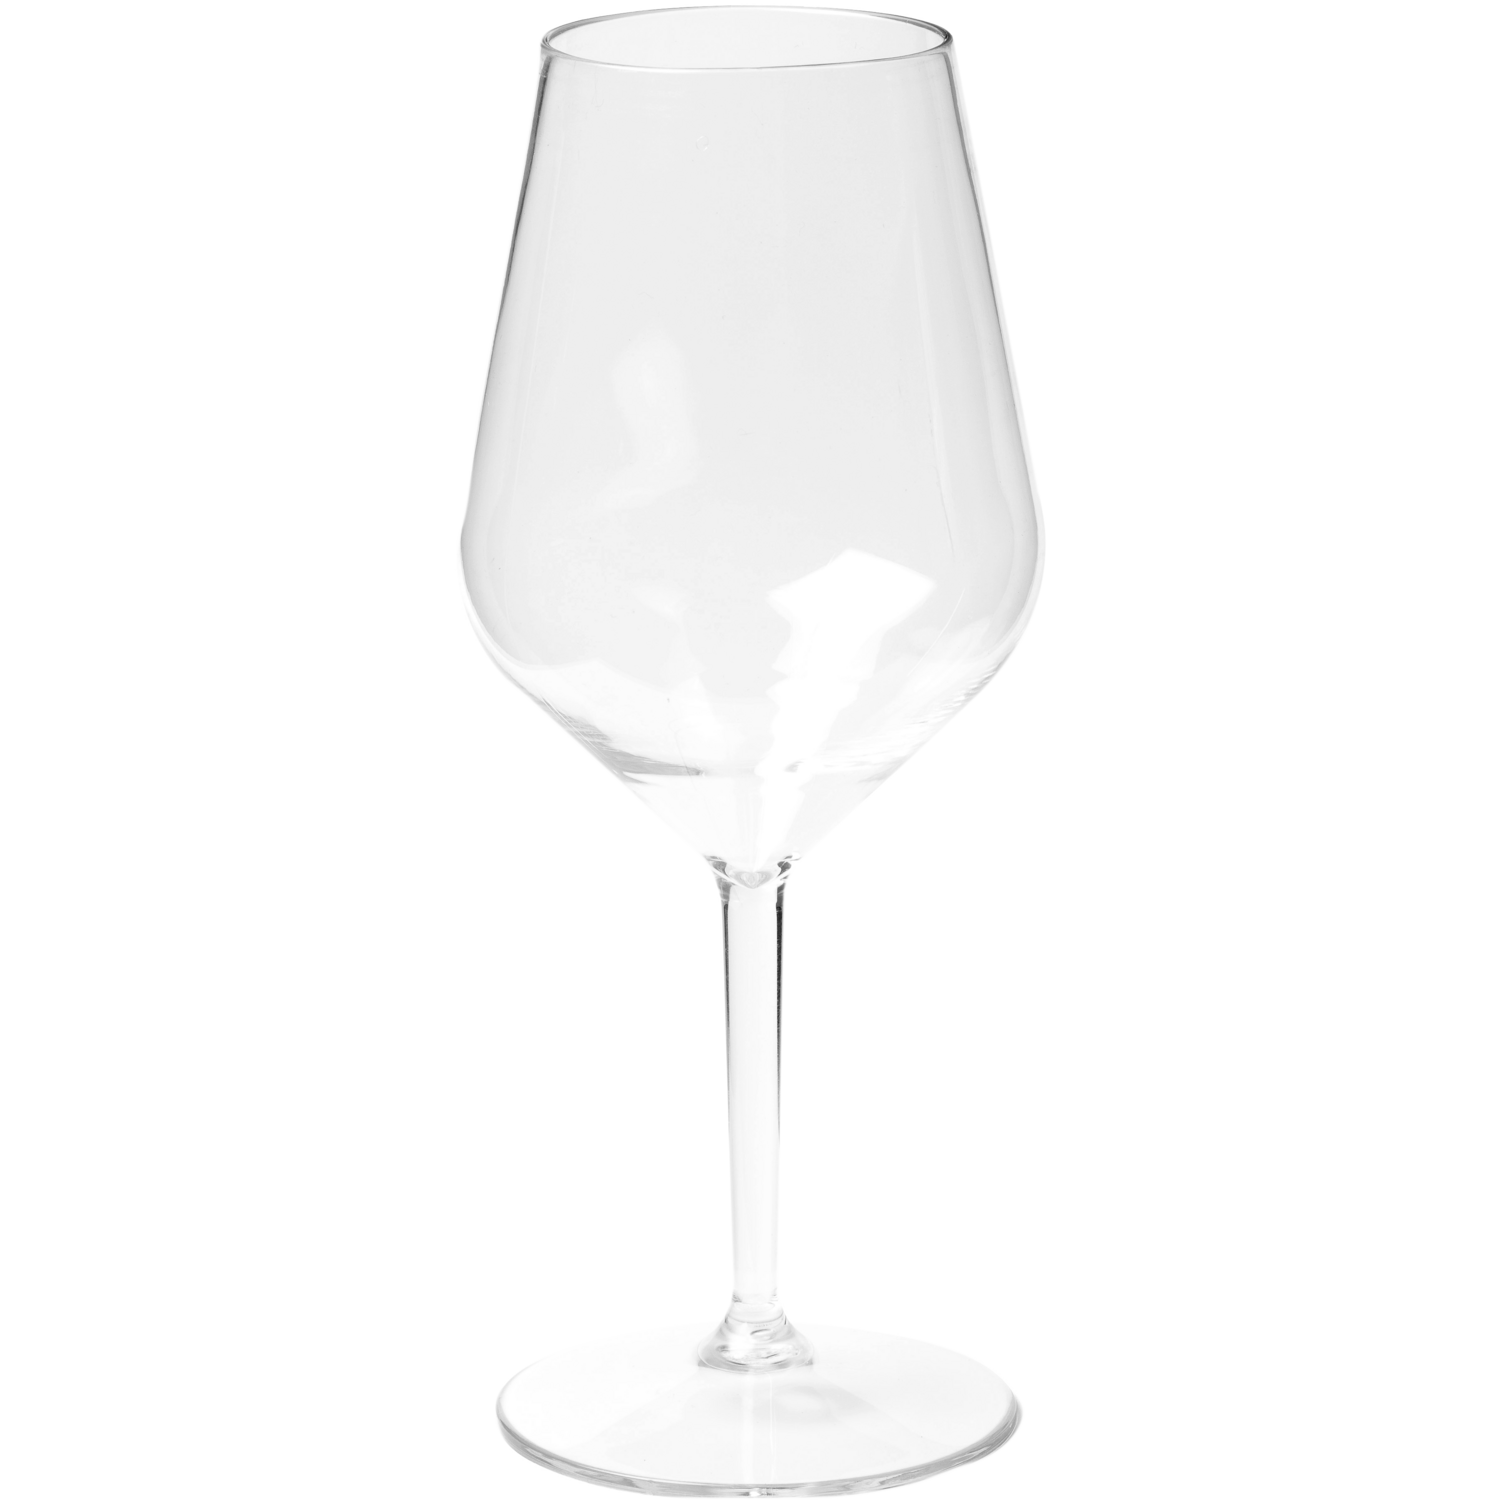 Depa® Verre, verre à vin, reusable, pETG, 470ml, transparent 1